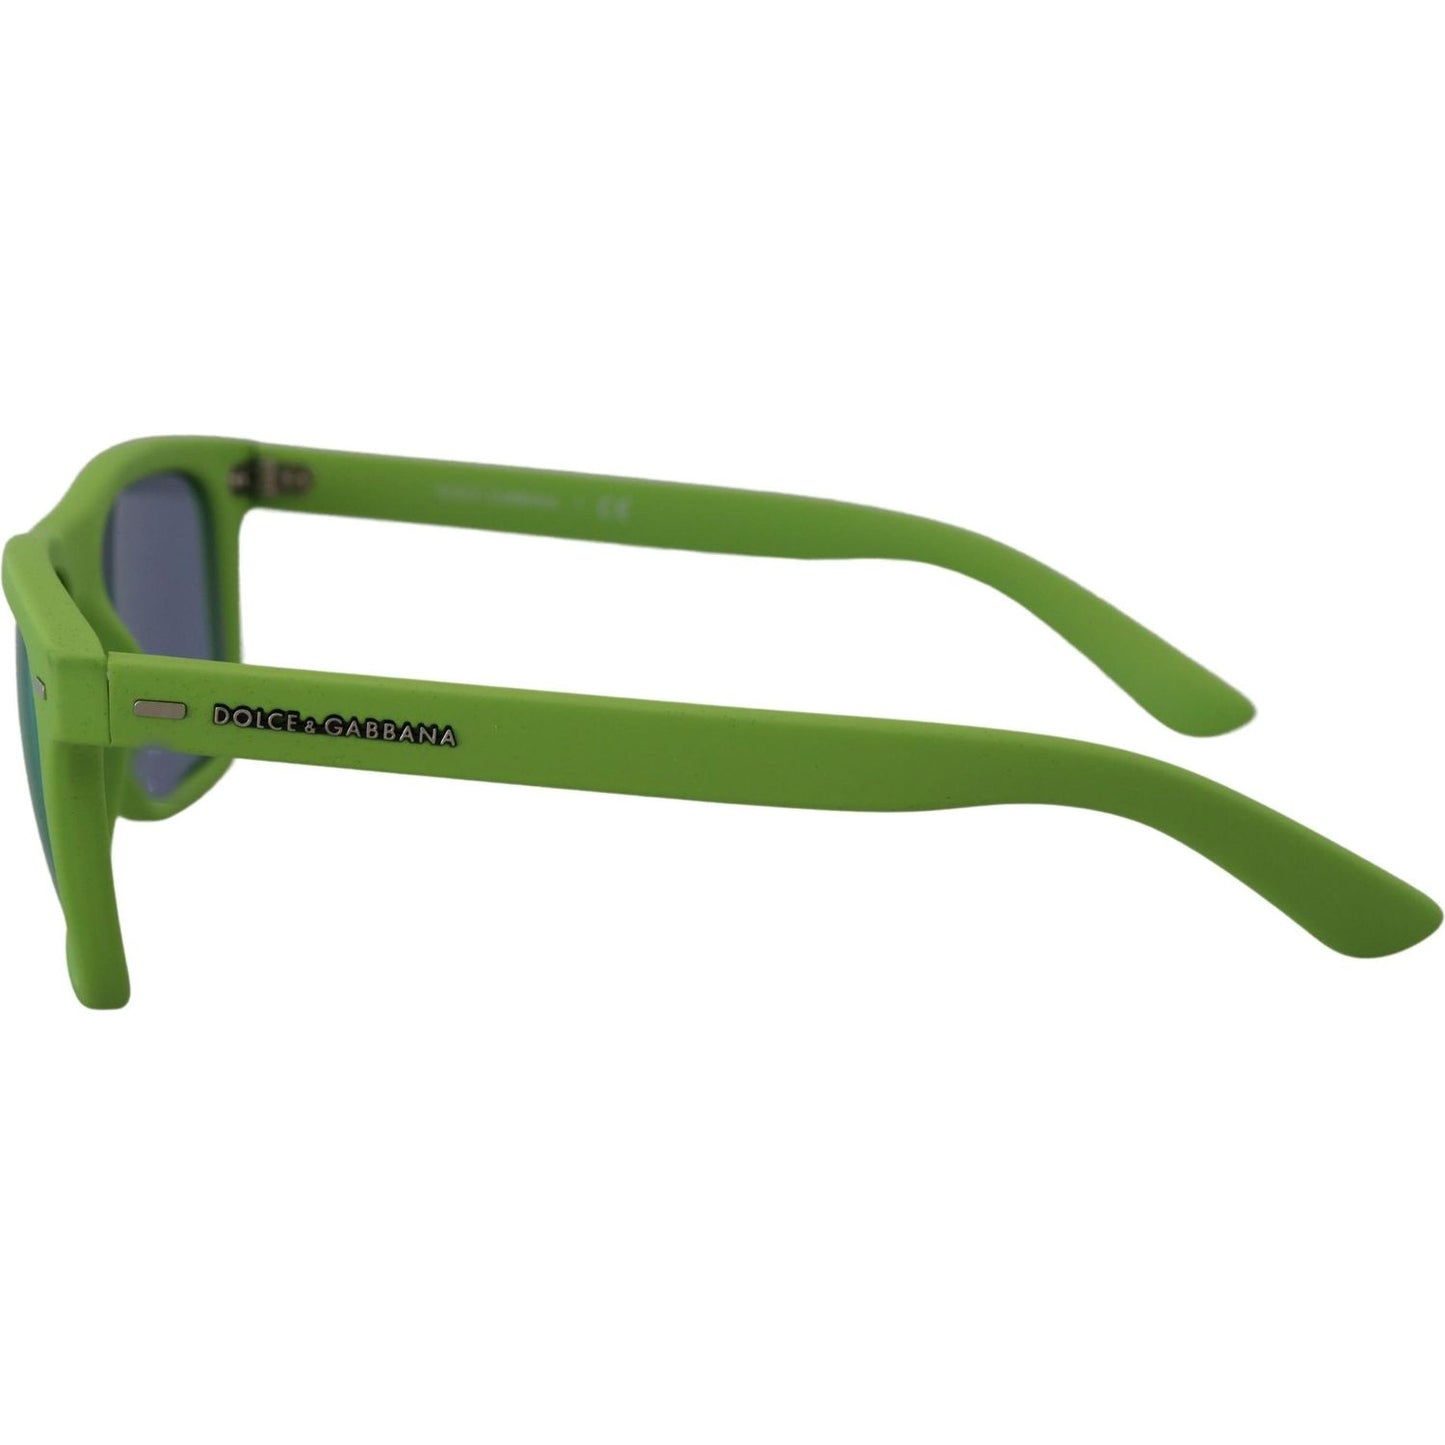 Dolce & Gabbana Acid Green Chic Full Rim Sunglasses green-rubber-full-rim-frame-shades-dg6095-acid-sunglasses IMG_4204-scaled-d2e88d71-bd4.jpg